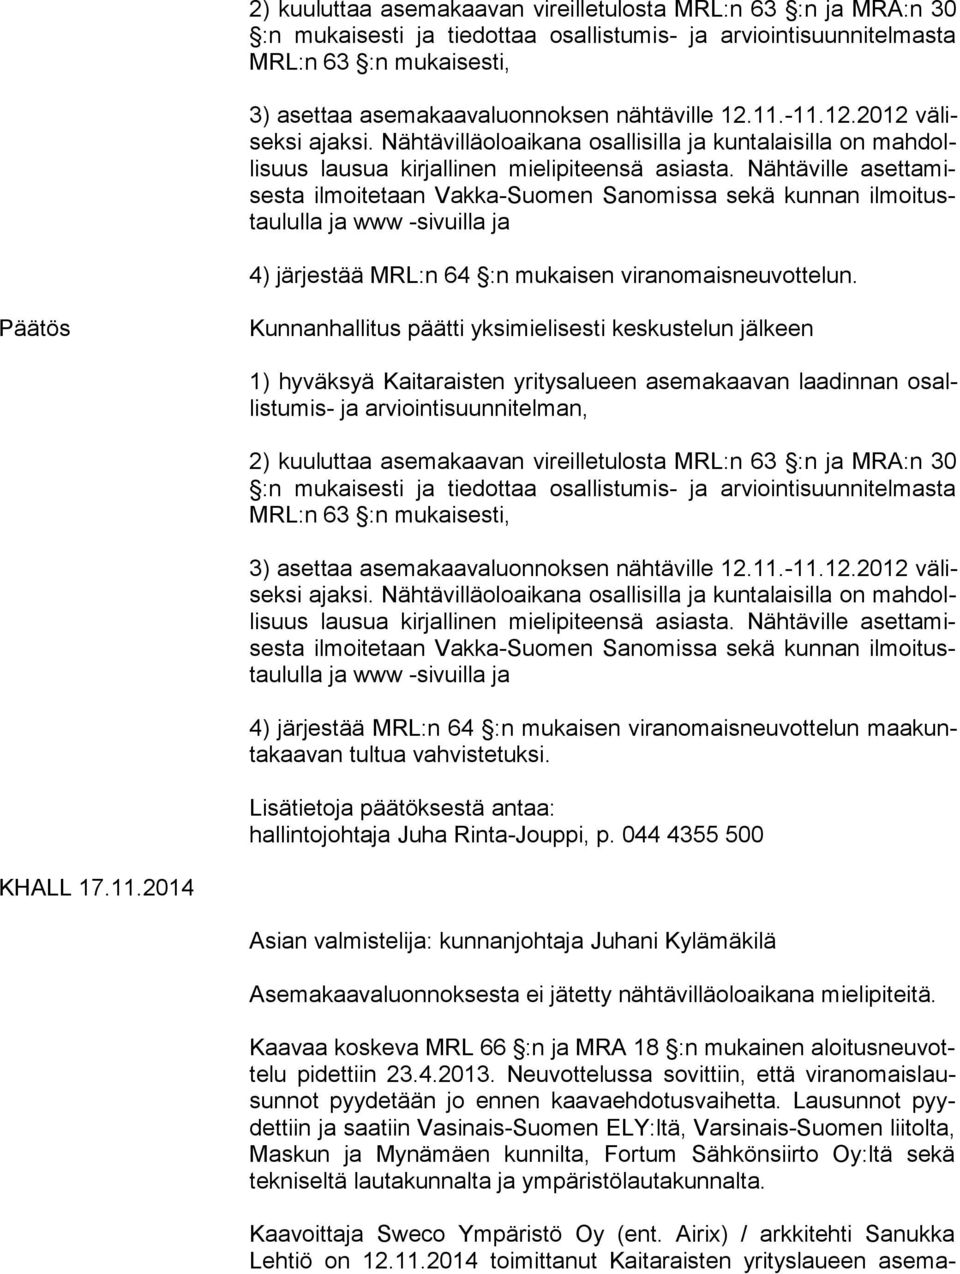 Nähtäville aset ta mises ta ilmoitetaan Vakka-Suomen Sanomissa sekä kunnan il moi tustau lul la ja www -sivuilla ja 4) järjestää MRL:n 64 :n mukaisen viranomaisneuvottelun.